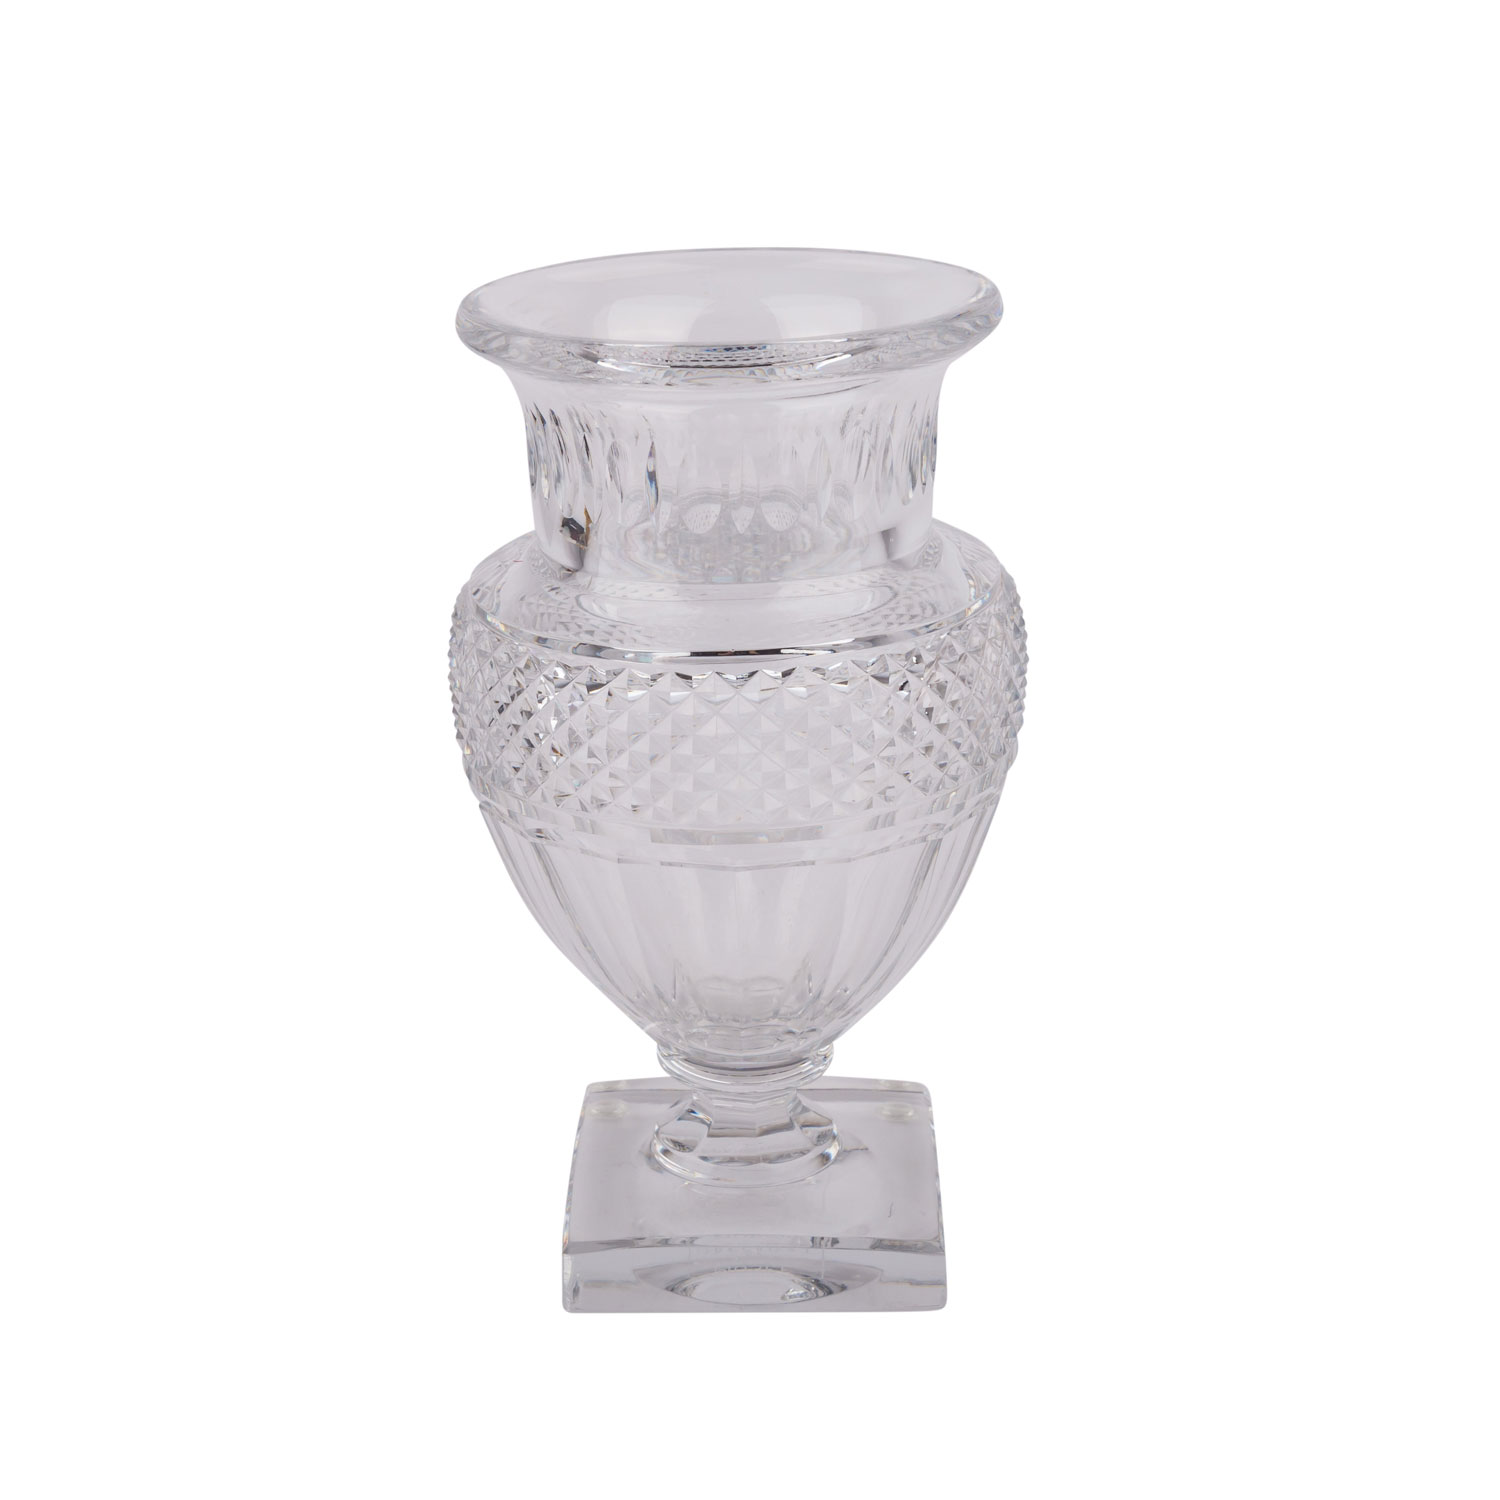 BACCARAT AMPHORENVASEKristallglas mit Facett- und Steinelschliff. Vase in amphorenform auf